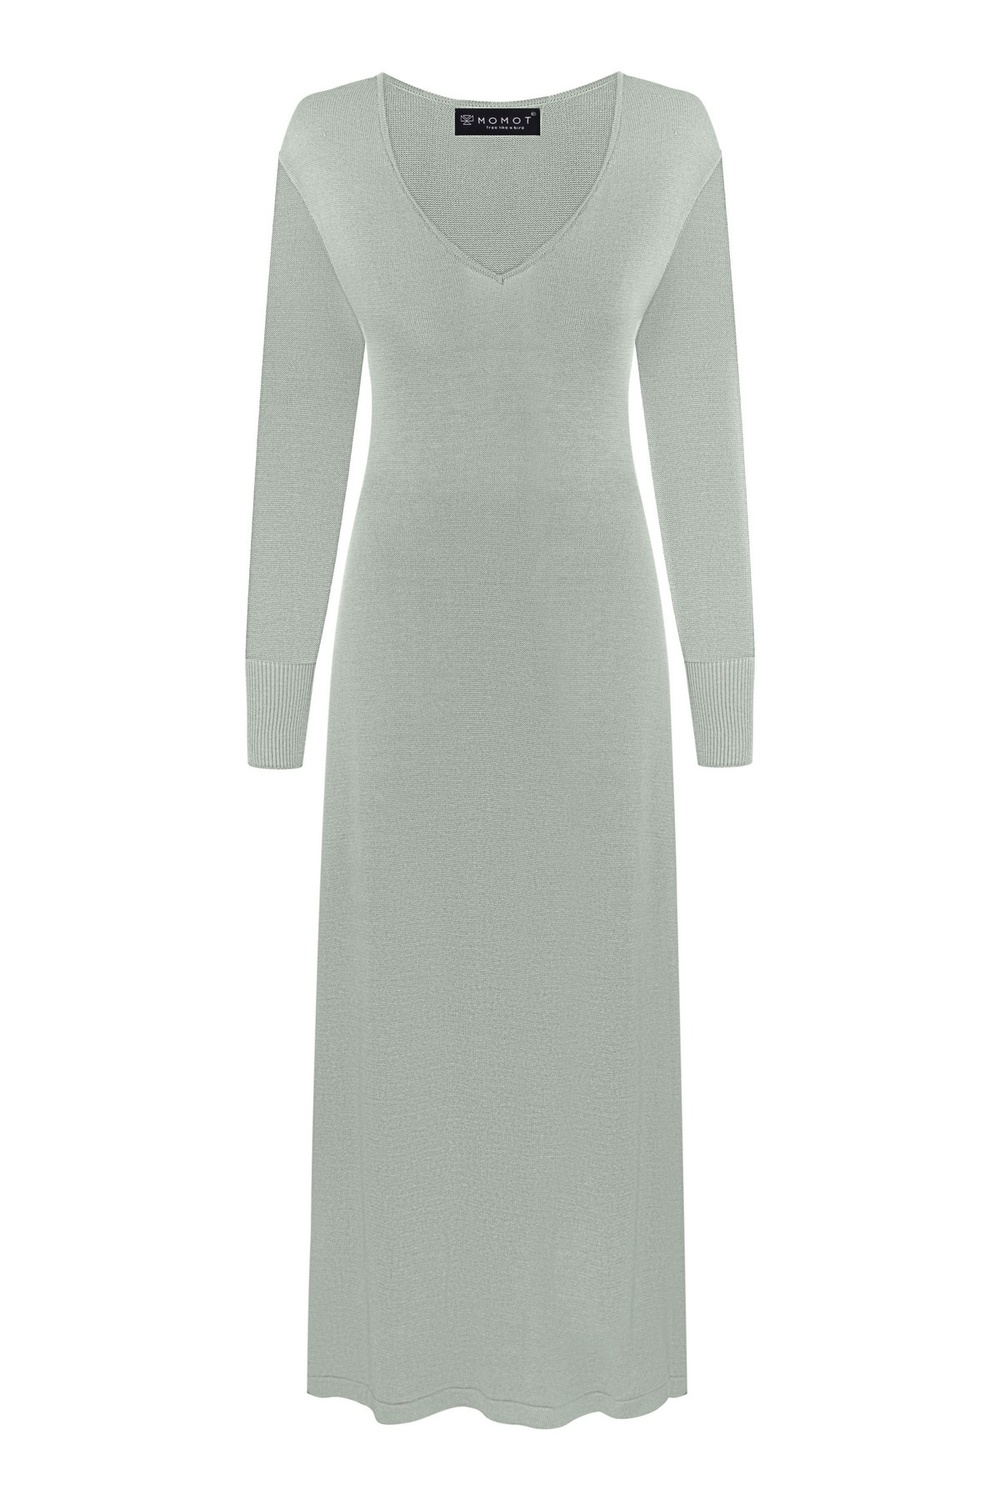 Платье вязаное с V вырезом из поливискозы DK_vi_125 фото